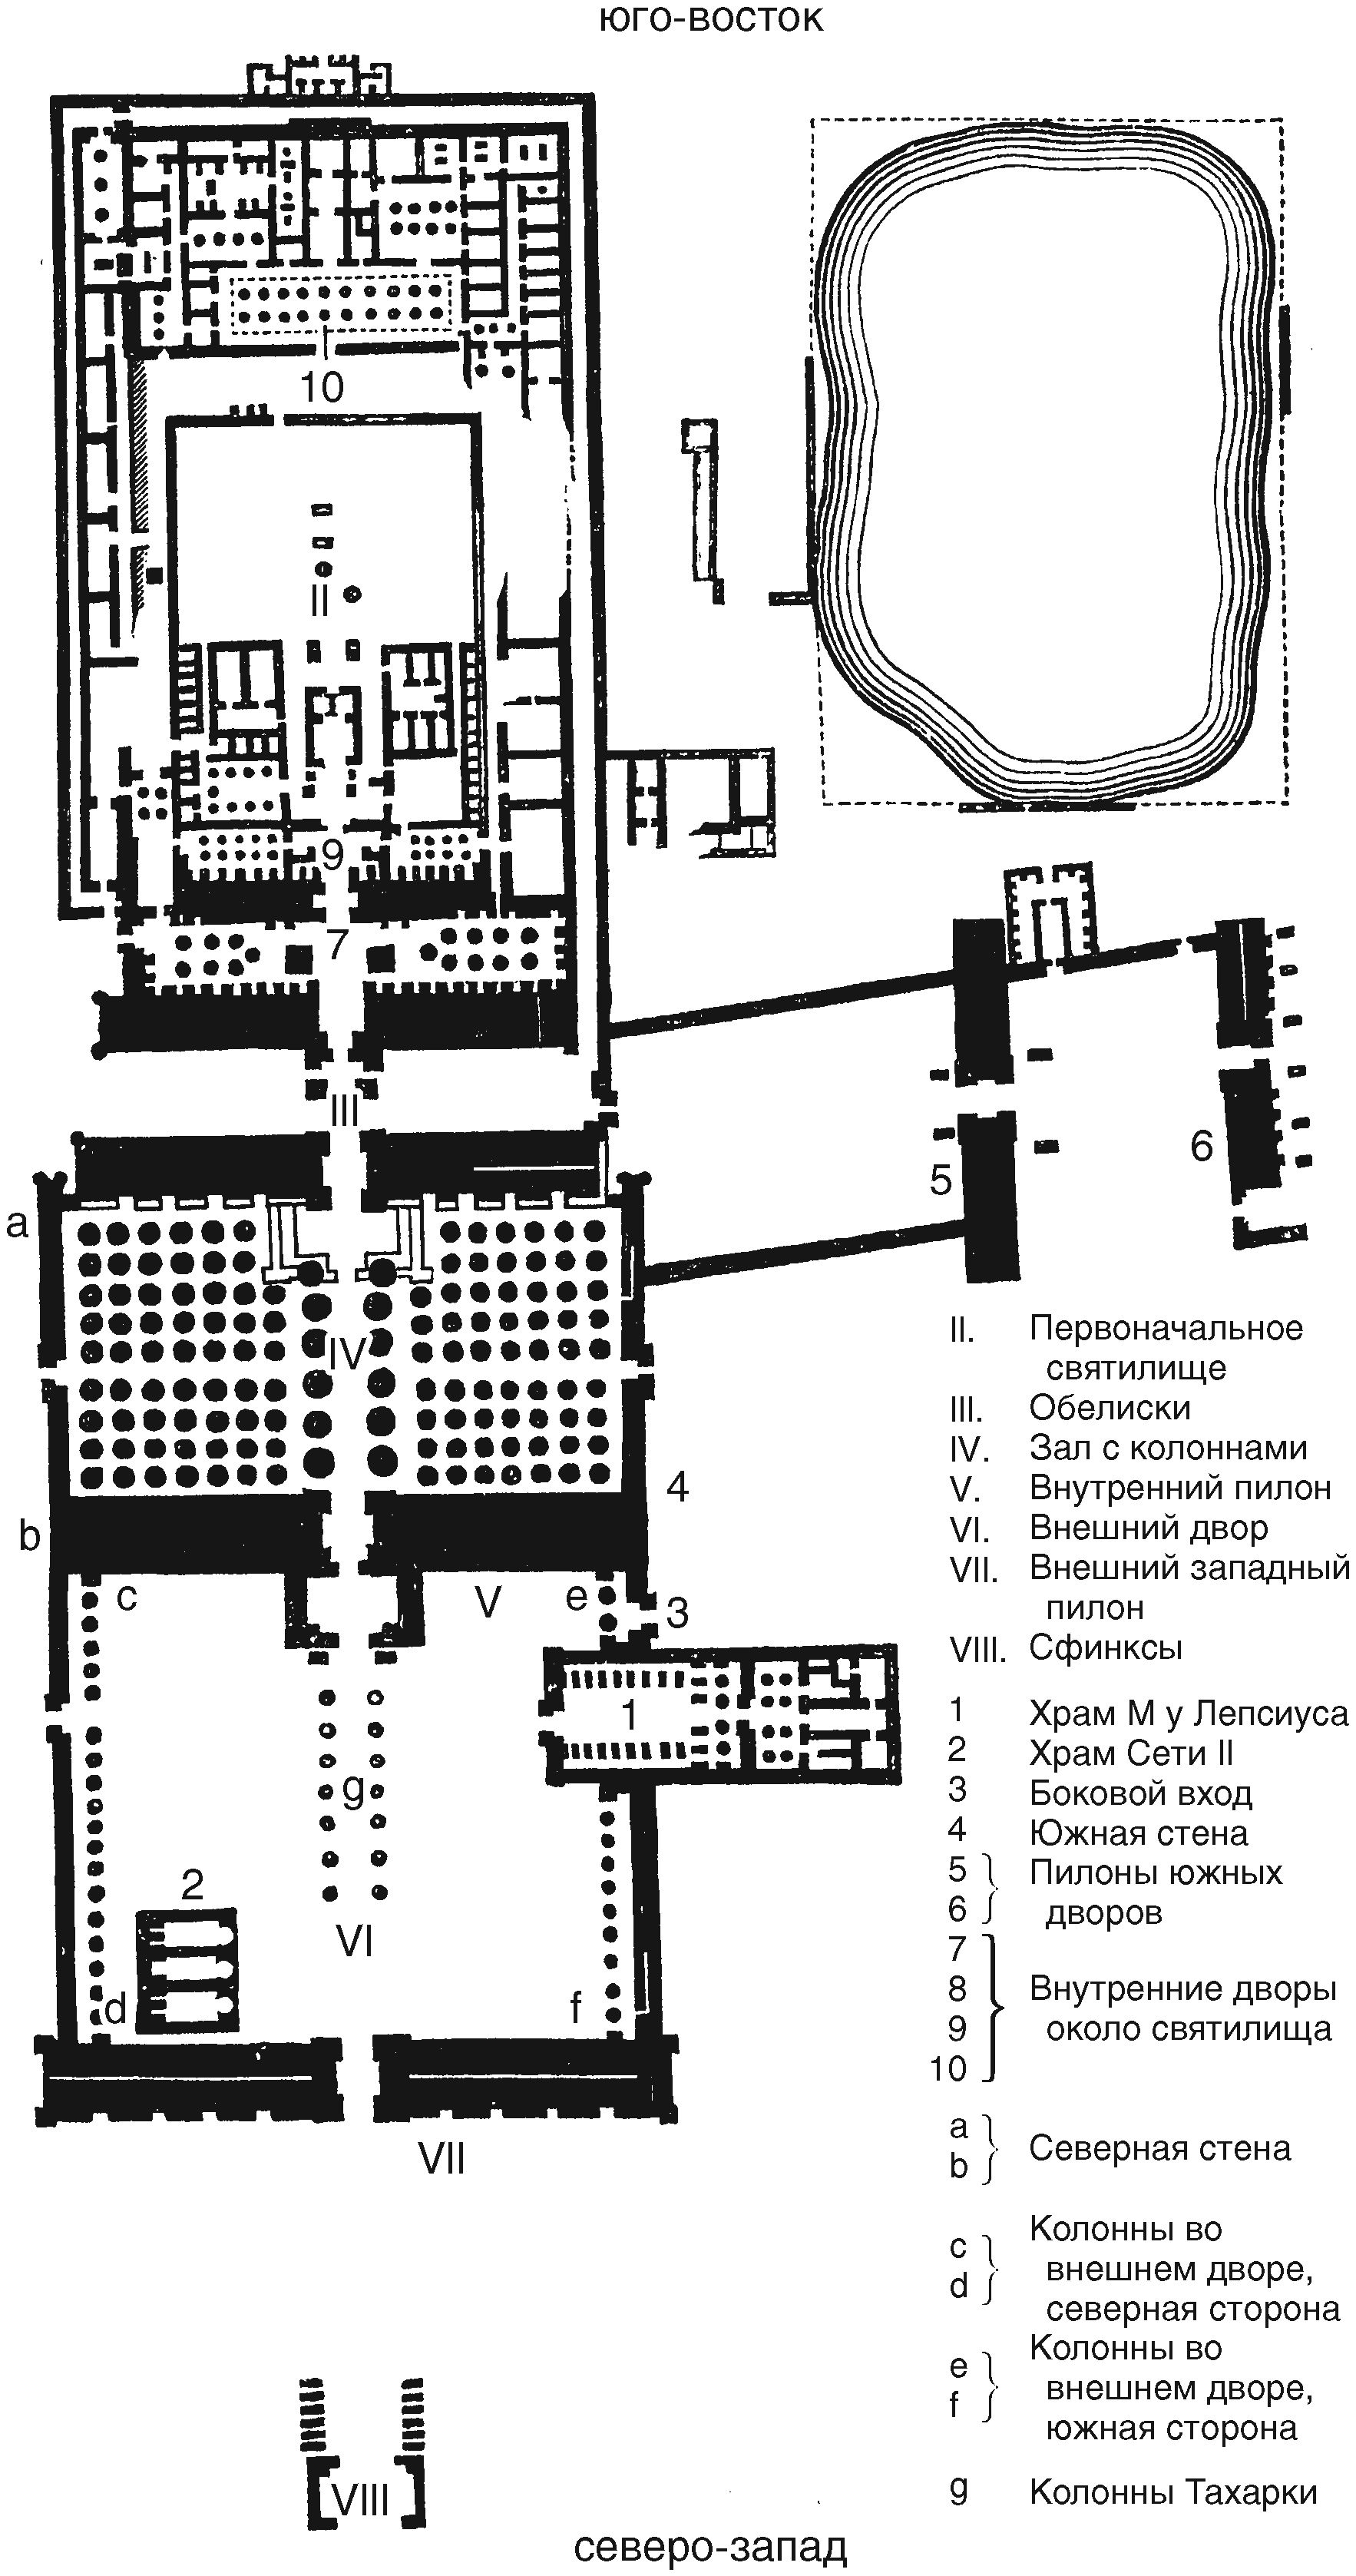 План храма Амона-Ра и прилегающей местности, включая священное озеро